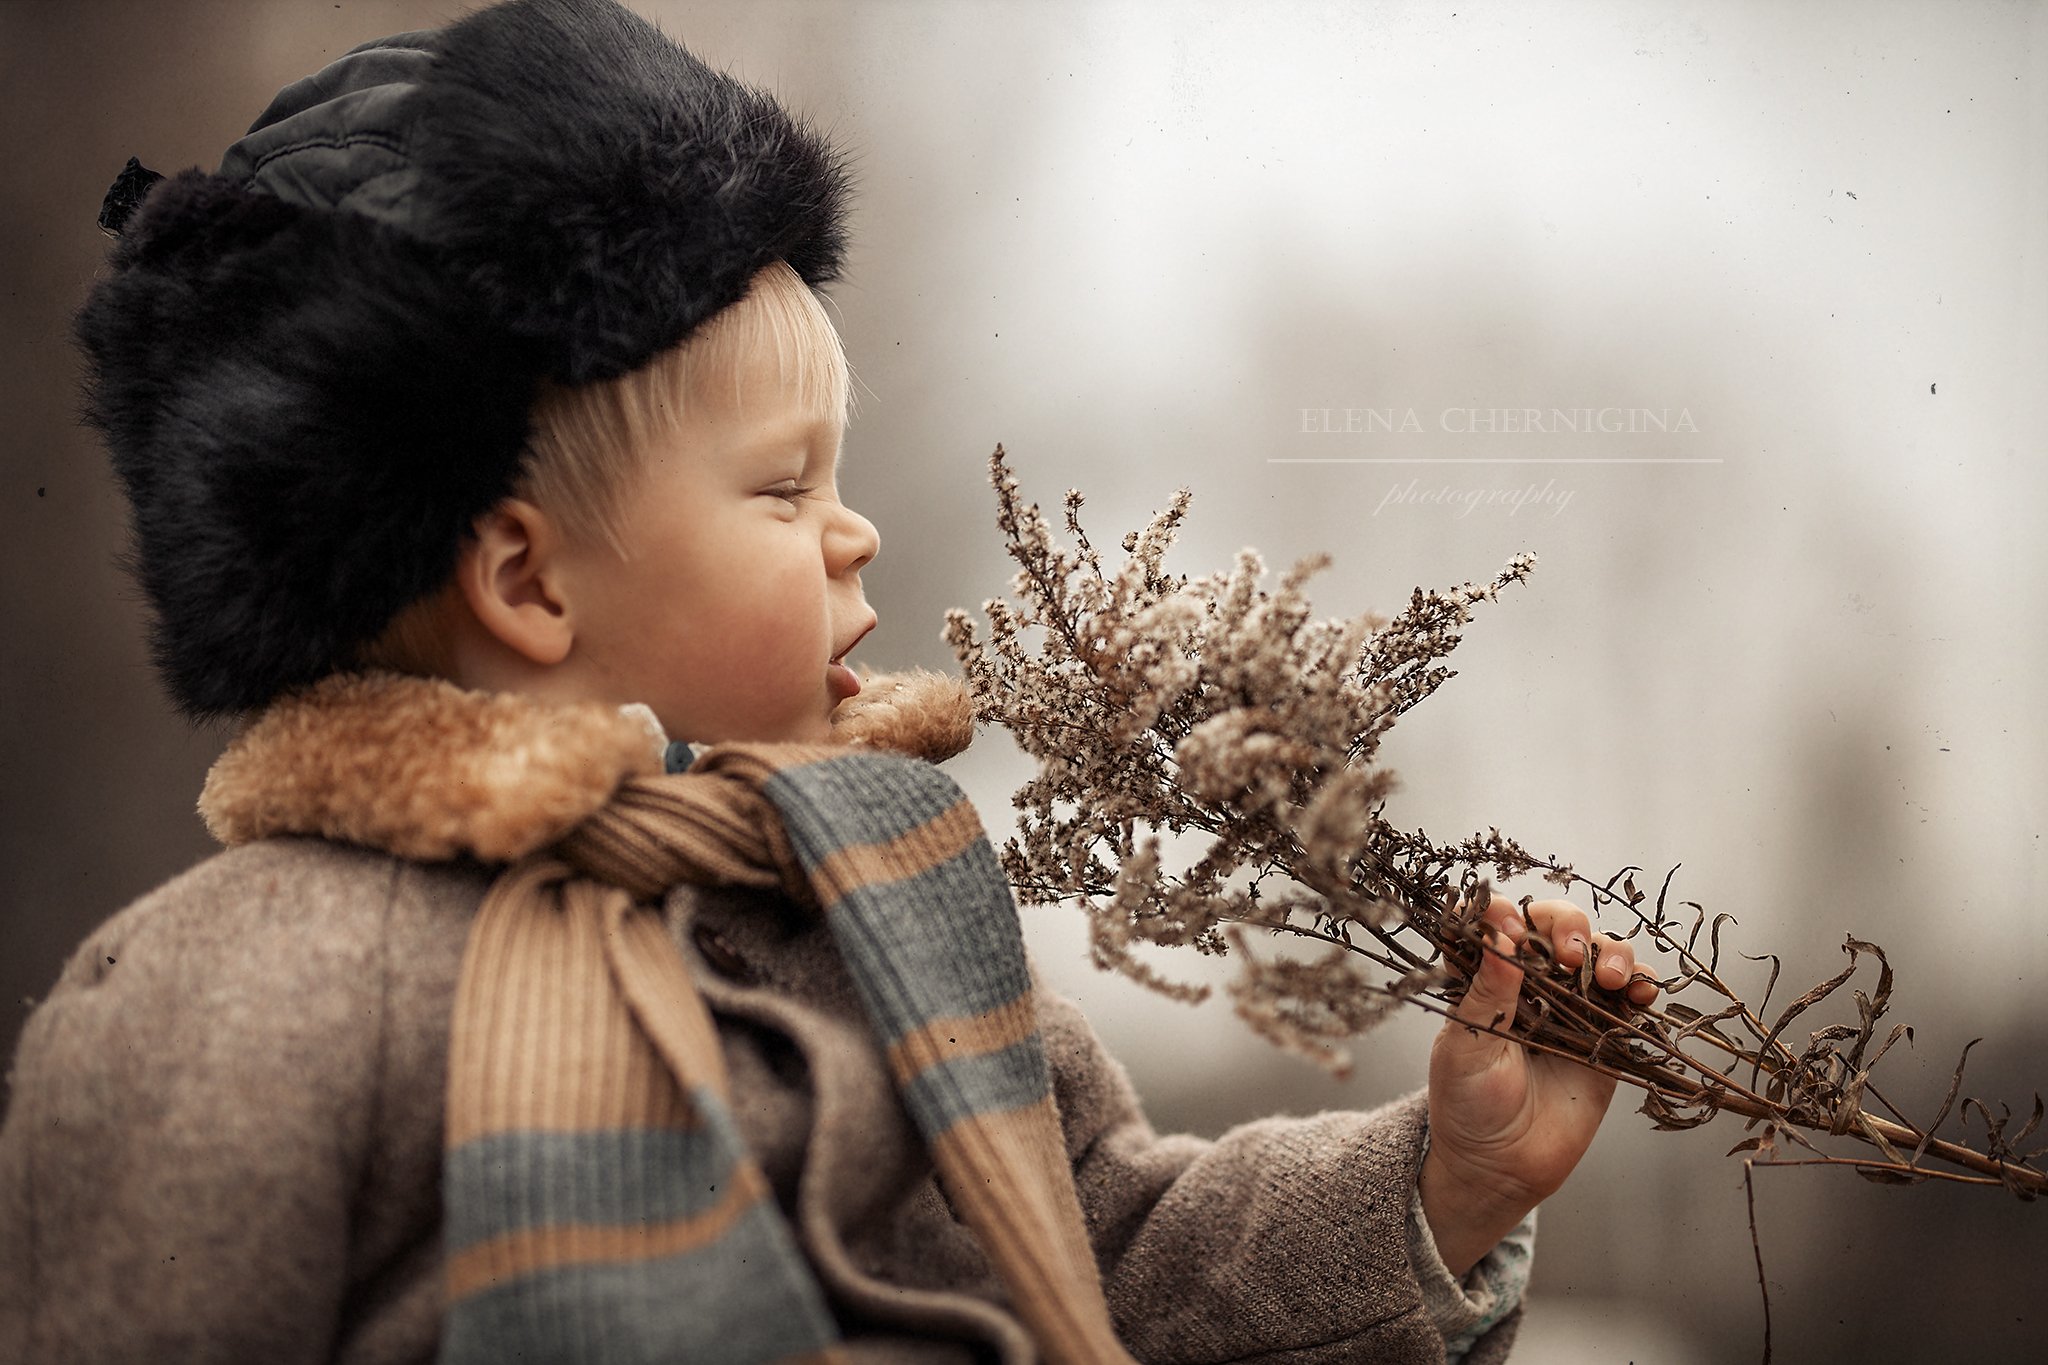 дети, мальчик, художественная фотография, природа, деревня, детская, ретро, Елена Чернигина